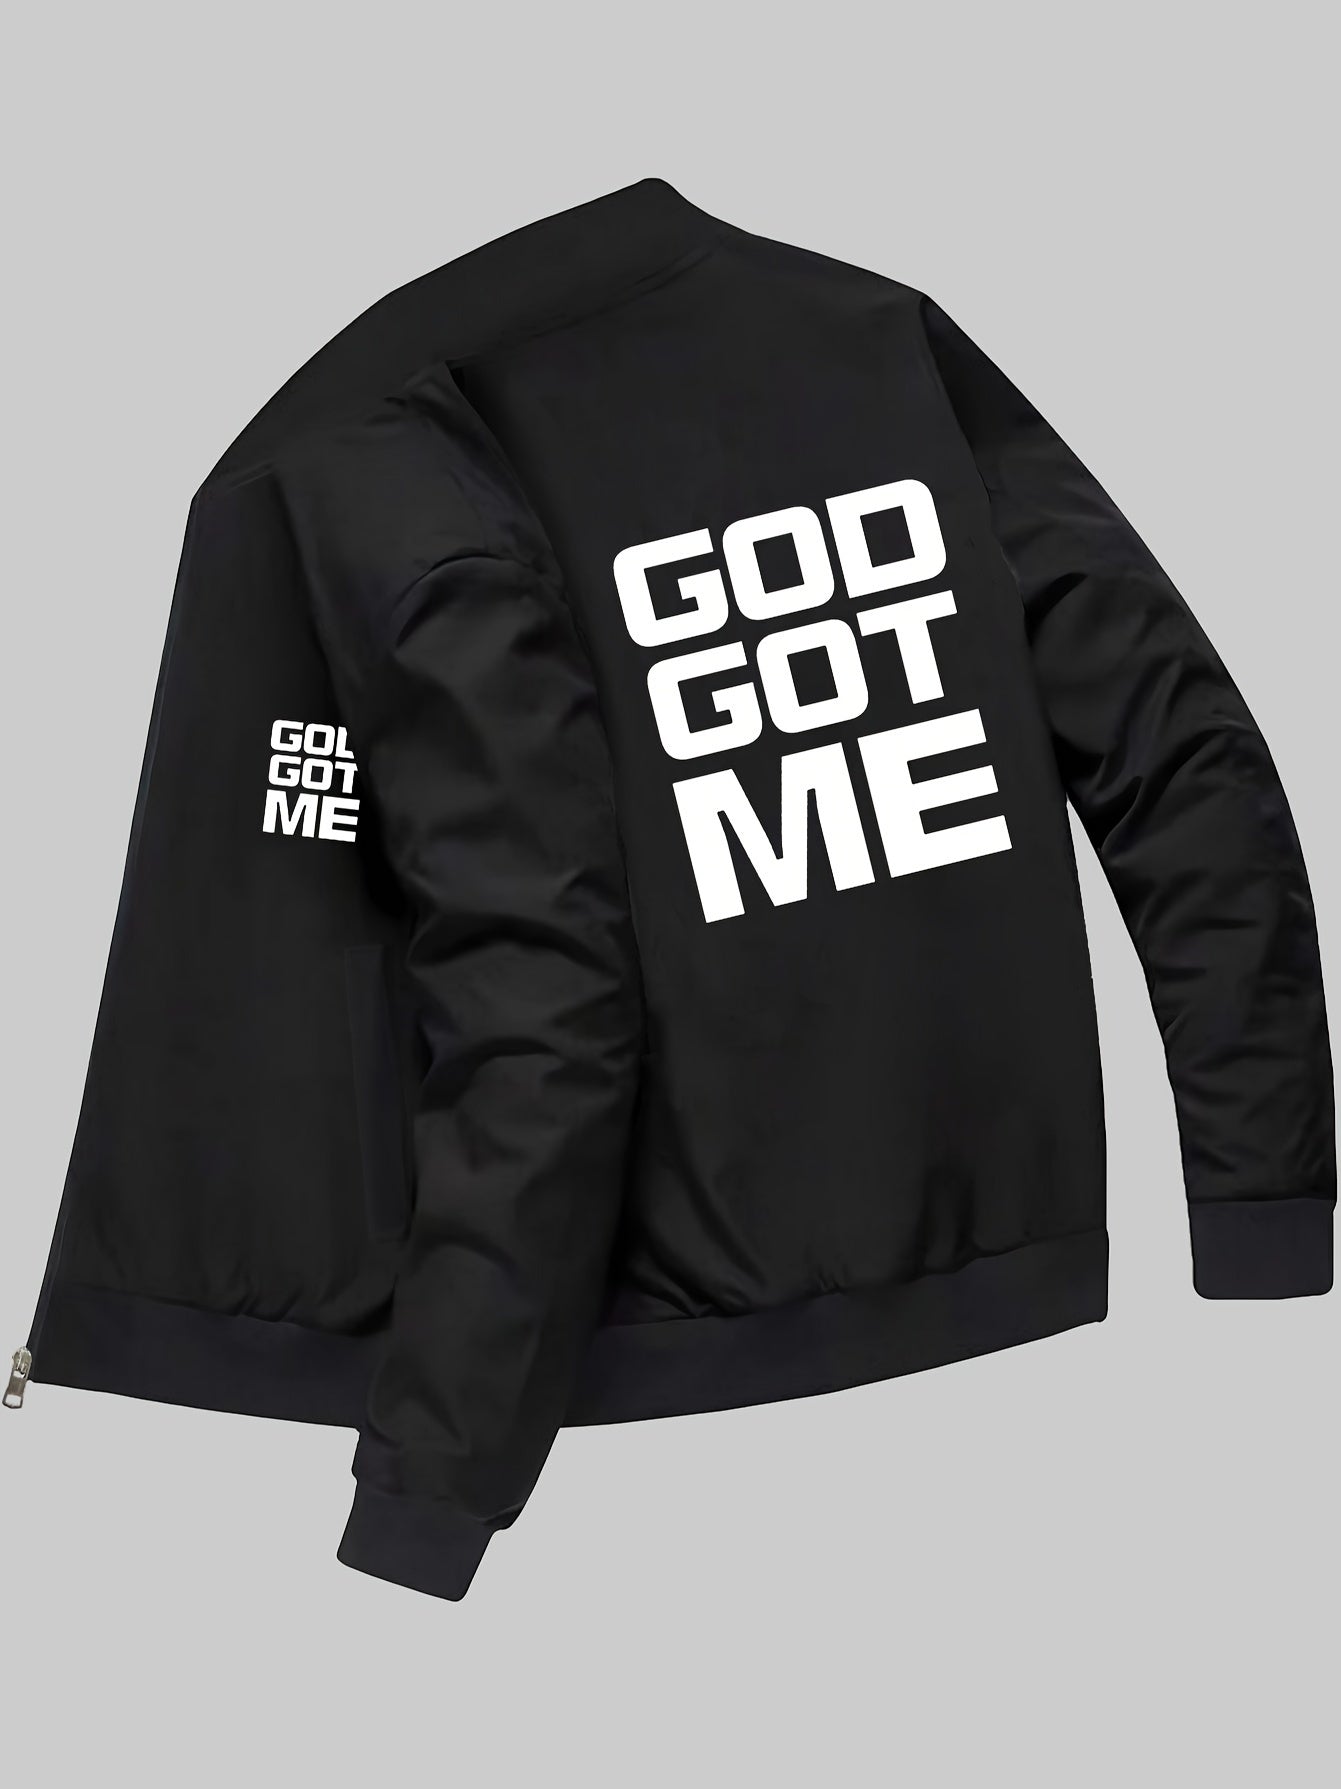 God Got Me Men's Christian Jacket claimedbygoddesigns